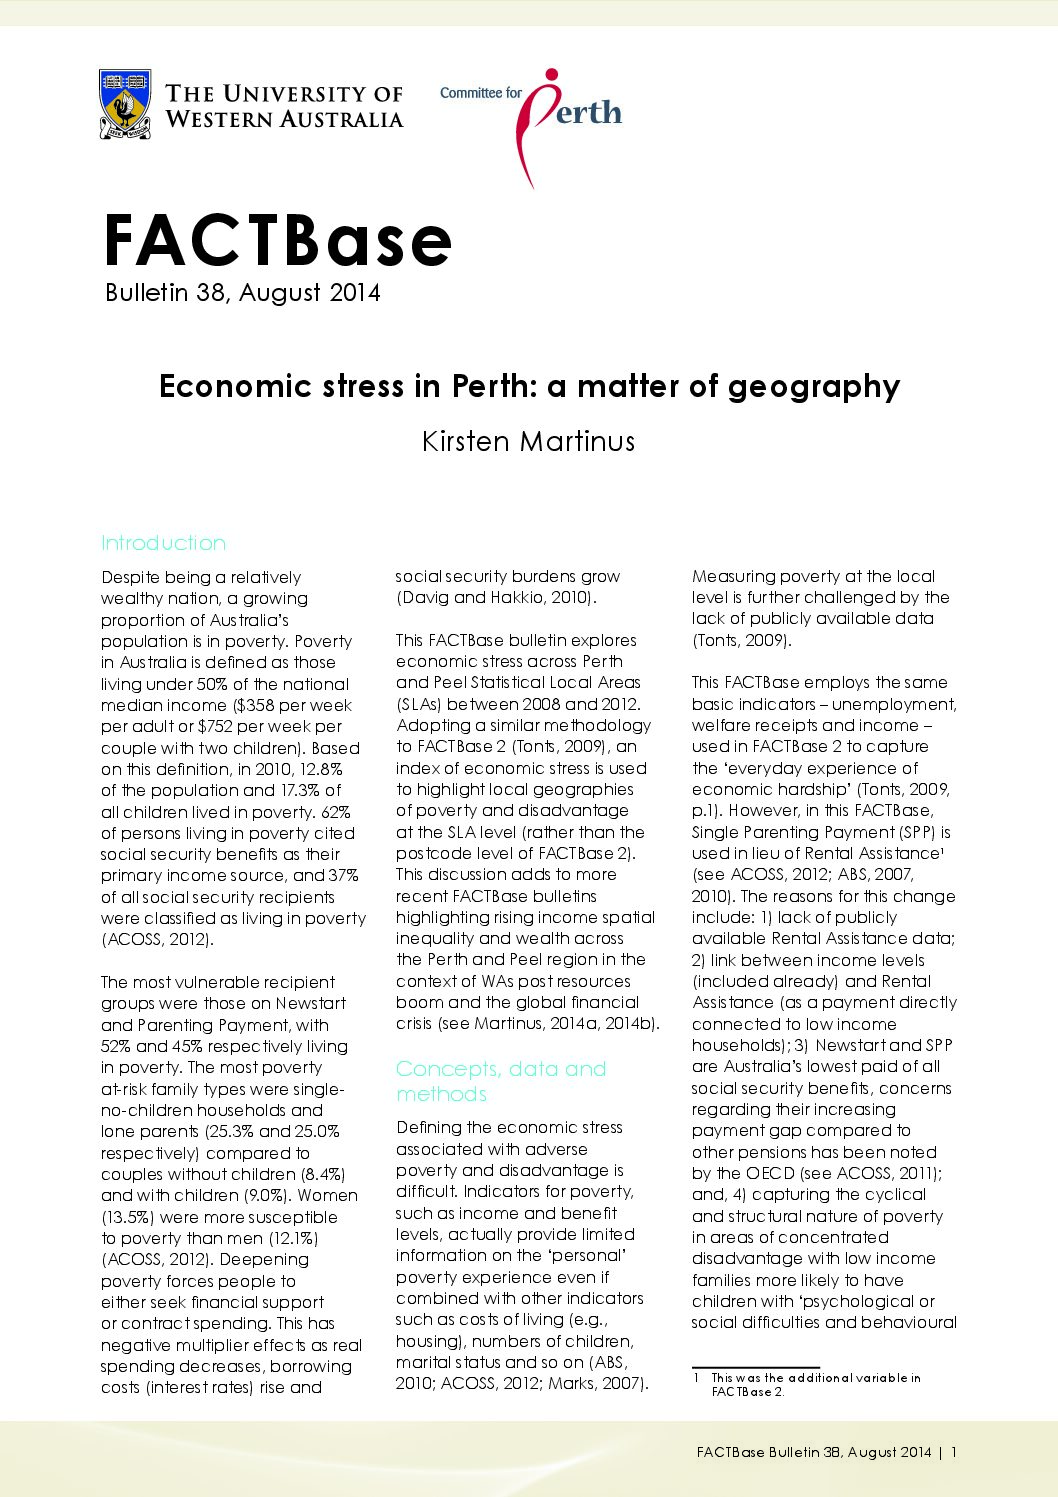 FACTBase Bulletin 38 - September 2014